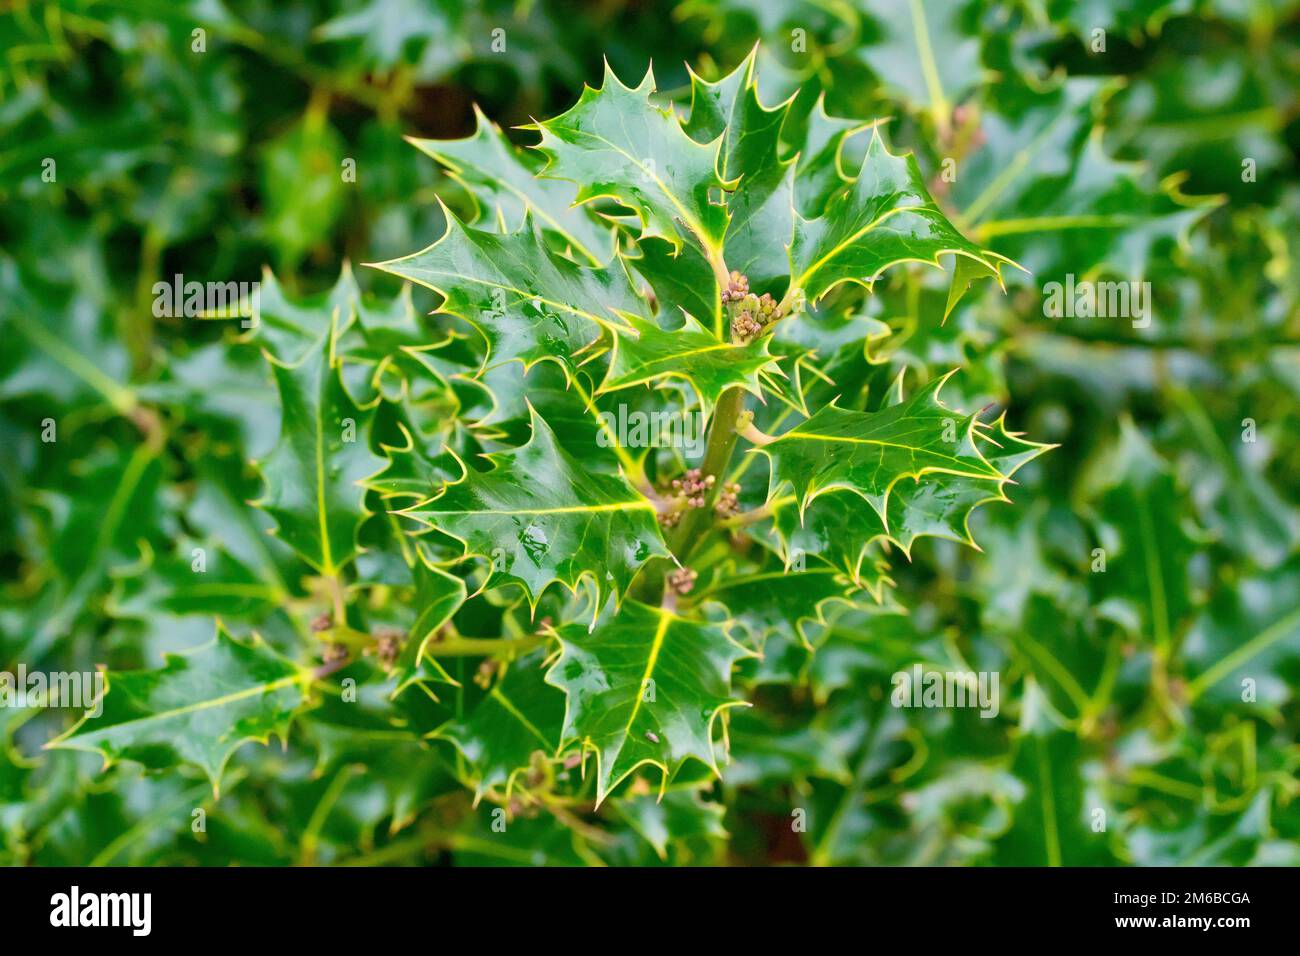 Holly (ilex aquifolium), près d'une branche du petit arbre ou arbuste montrant les feuilles épineuses et les boutons floraux de l'année suivante. Banque D'Images